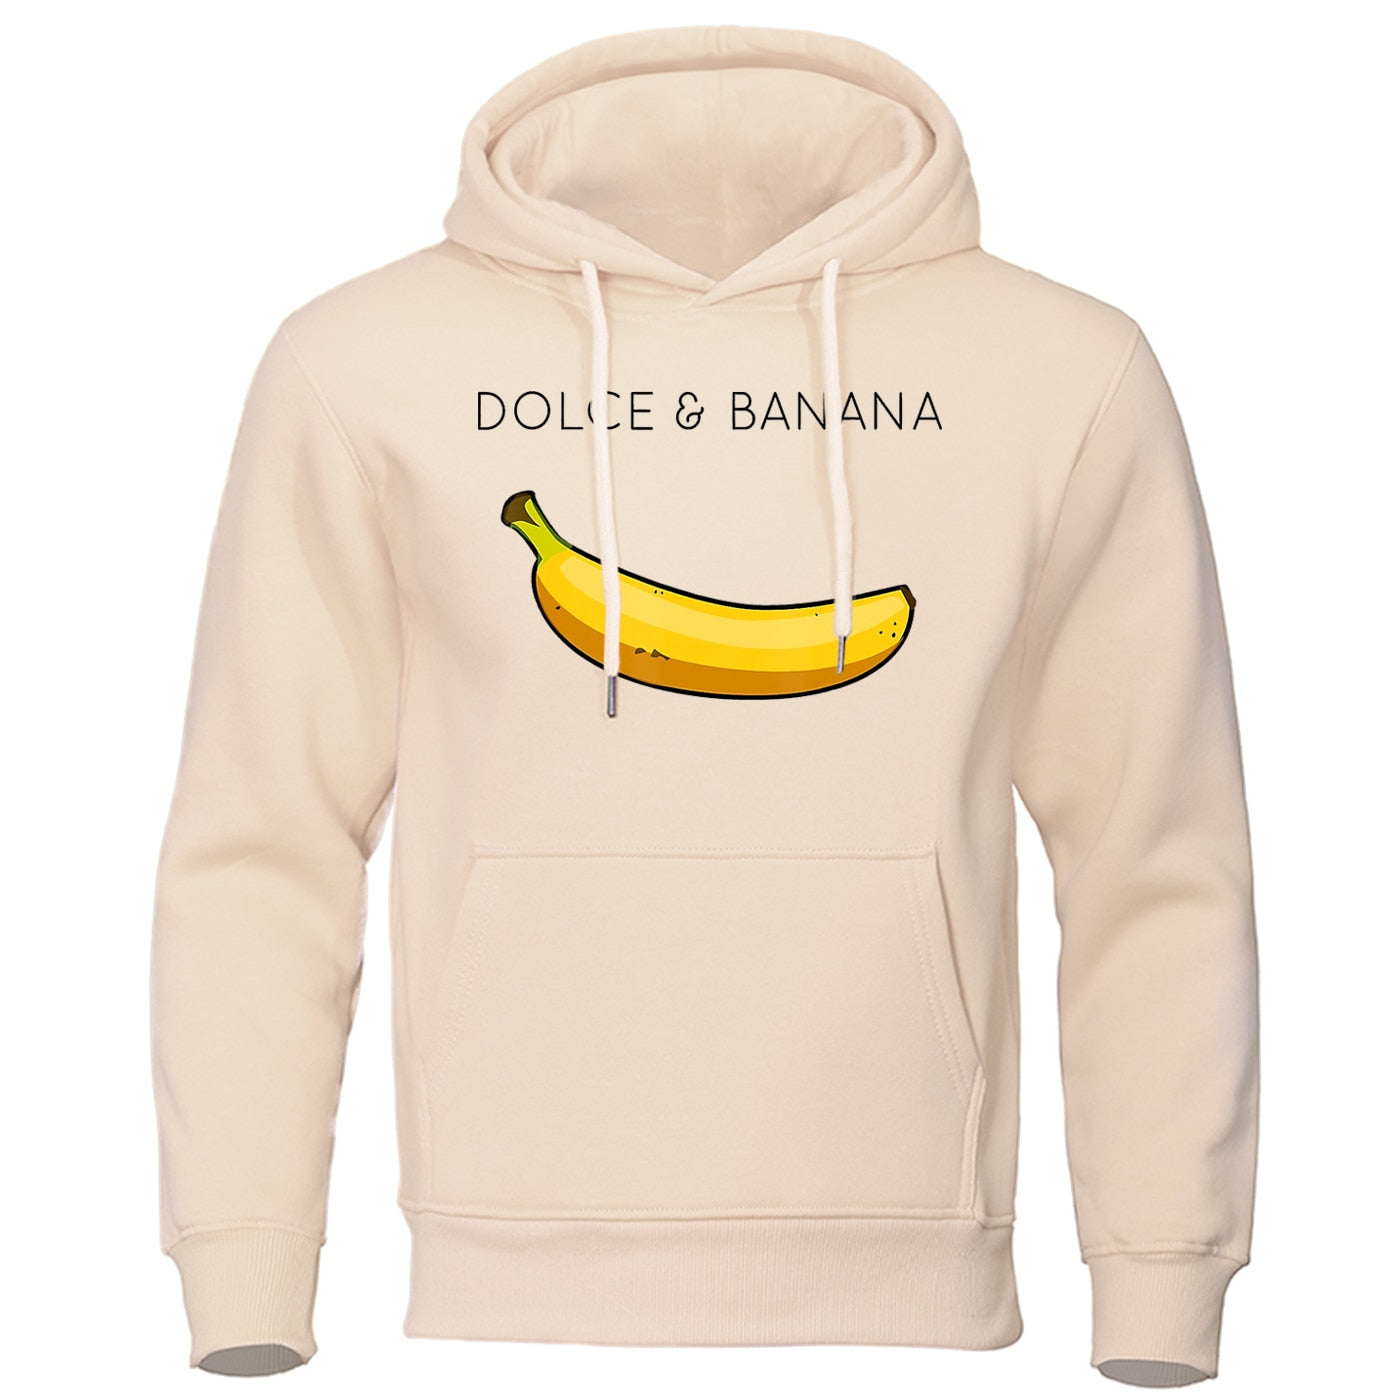 Dolce & Banana Kapuzenpullover